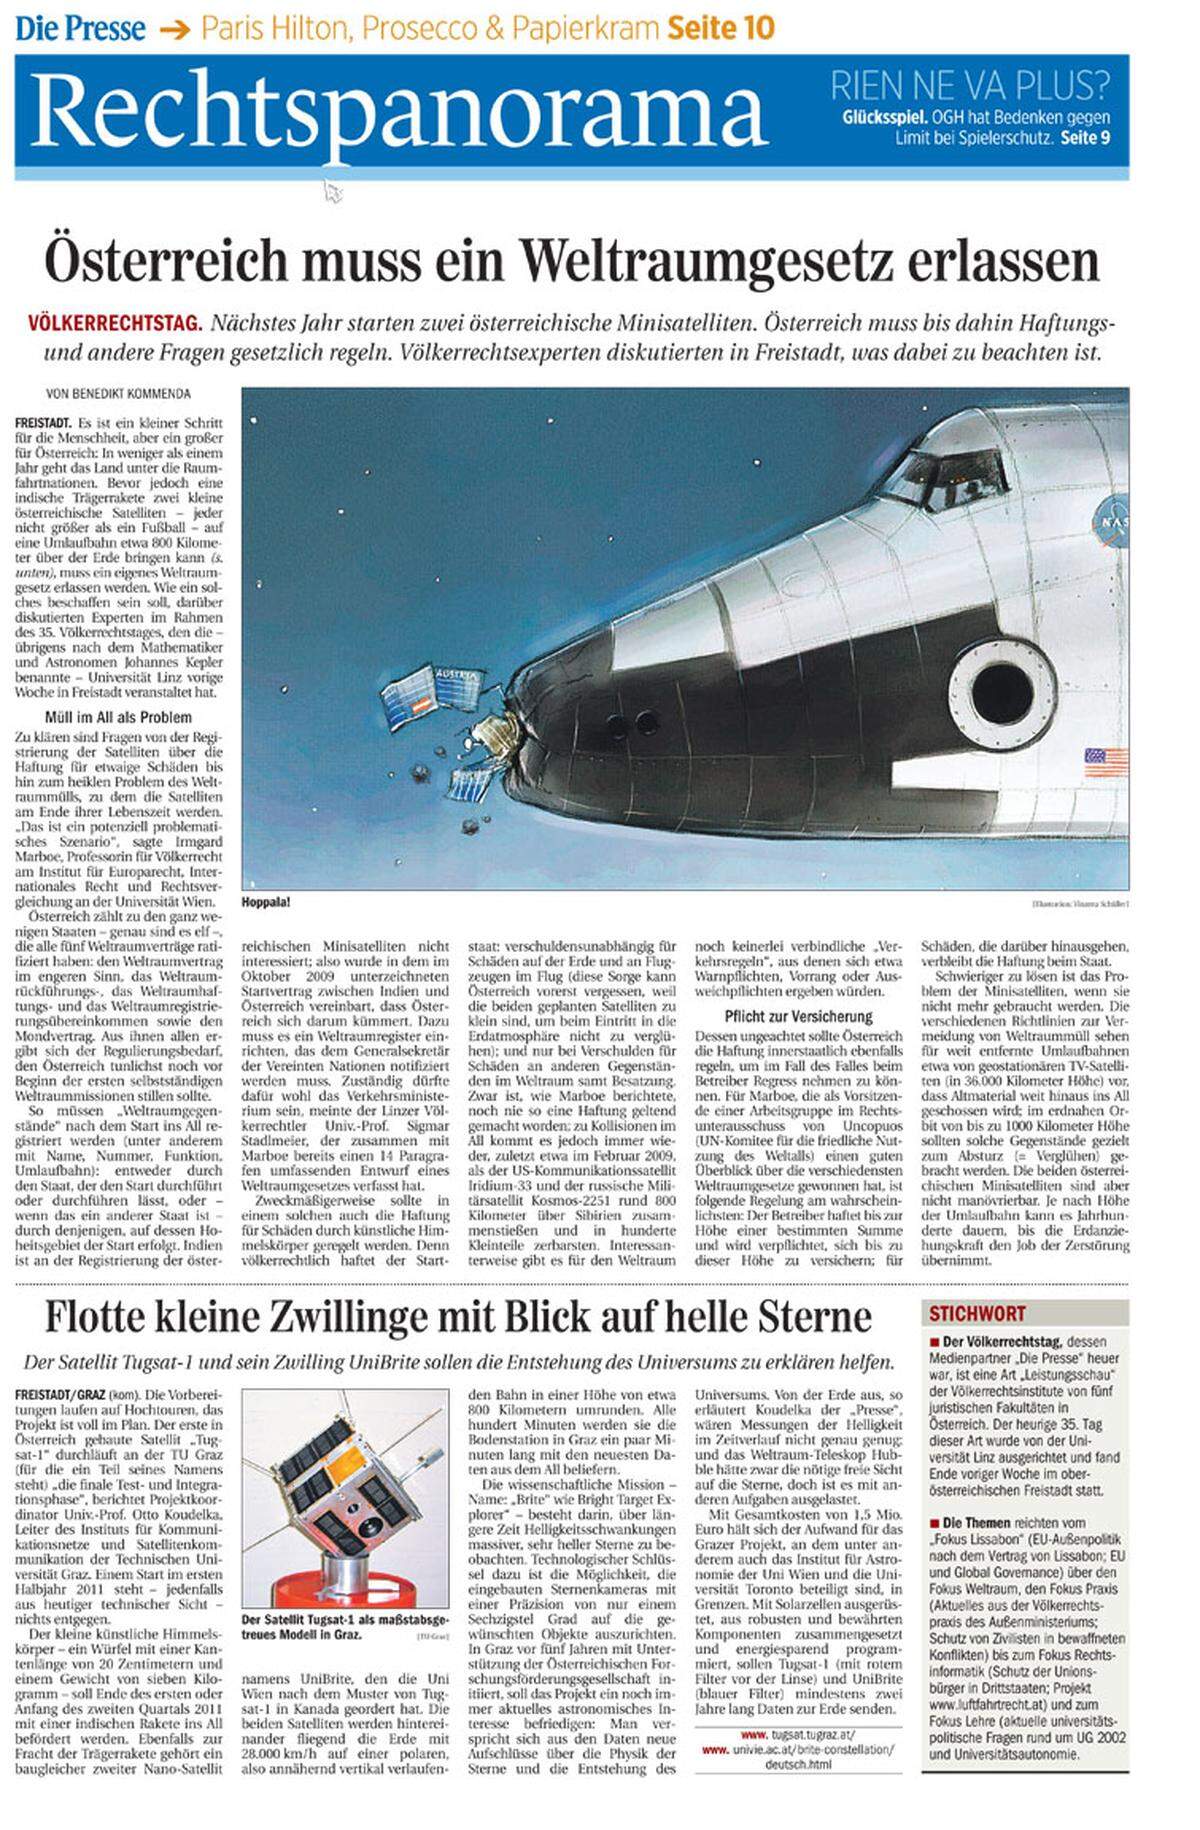 31. Mai 2010. Ein kleiner Schritt für die Menschheit, aber ein großer für Österreich: Das Land braucht ein Weltraumgesetz, weil zwei fußballgroße österreichische Forschungssatelliten ins All geschossen werden.